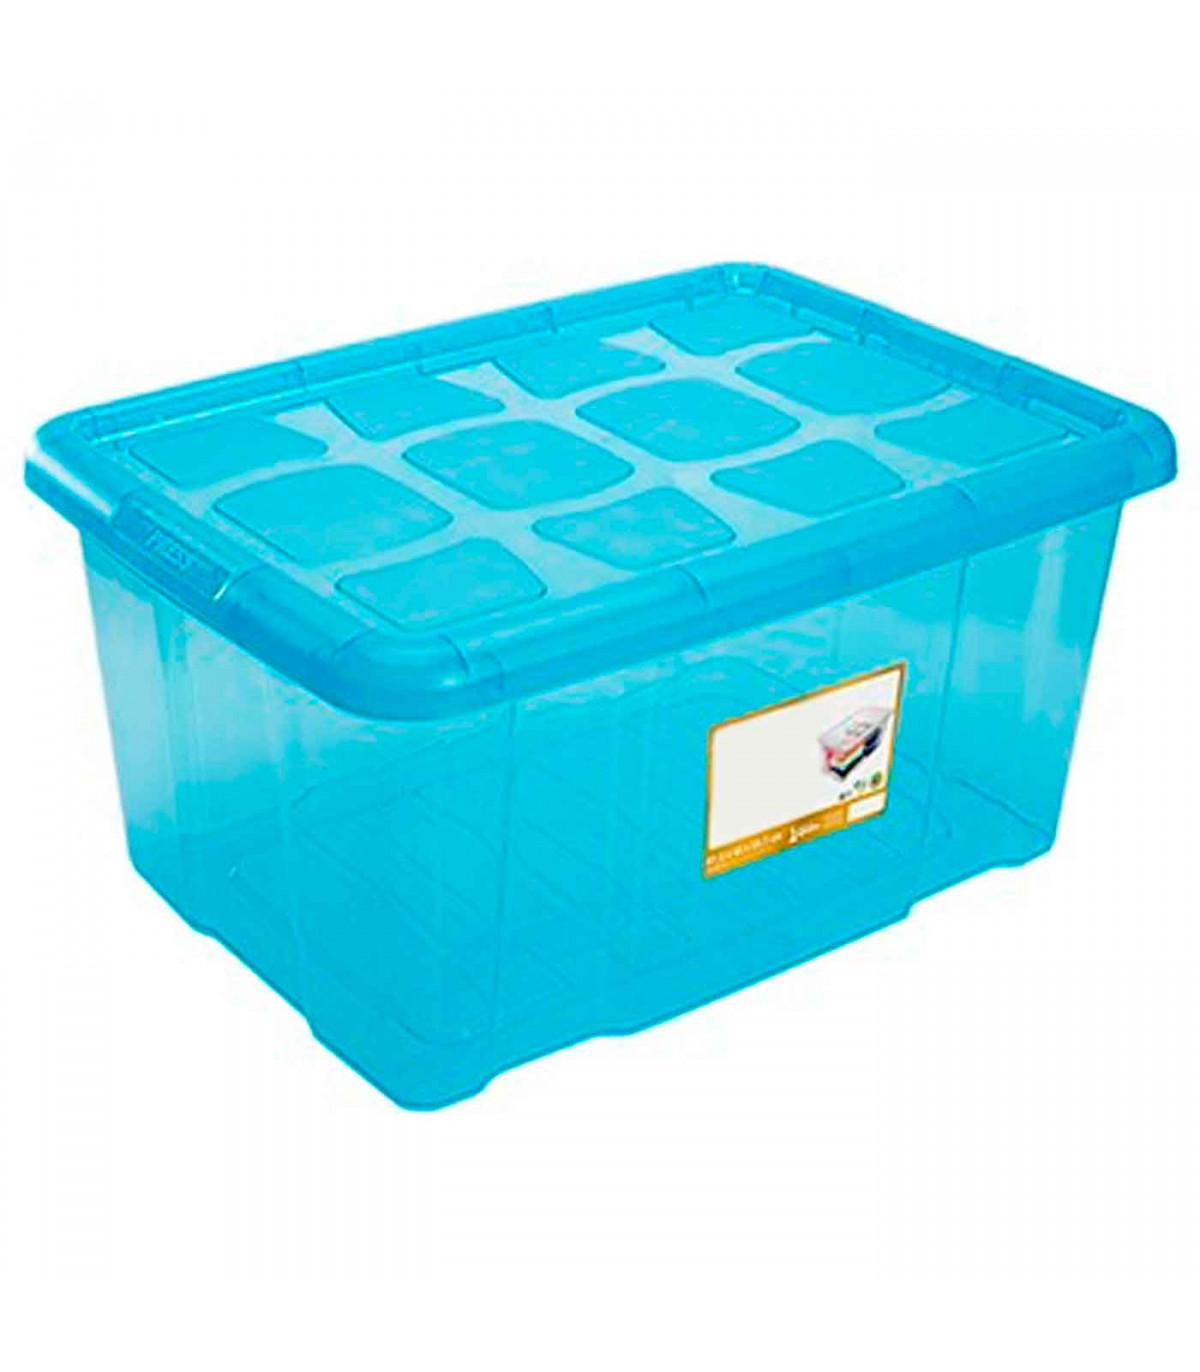 Aparecer Oceano Stevenson Caja almacenaje con tapa, plástico translúcido, cajón multiusos,  ordenación, almacenamiento de objetos, hogar, 60 litros, 29,7 x